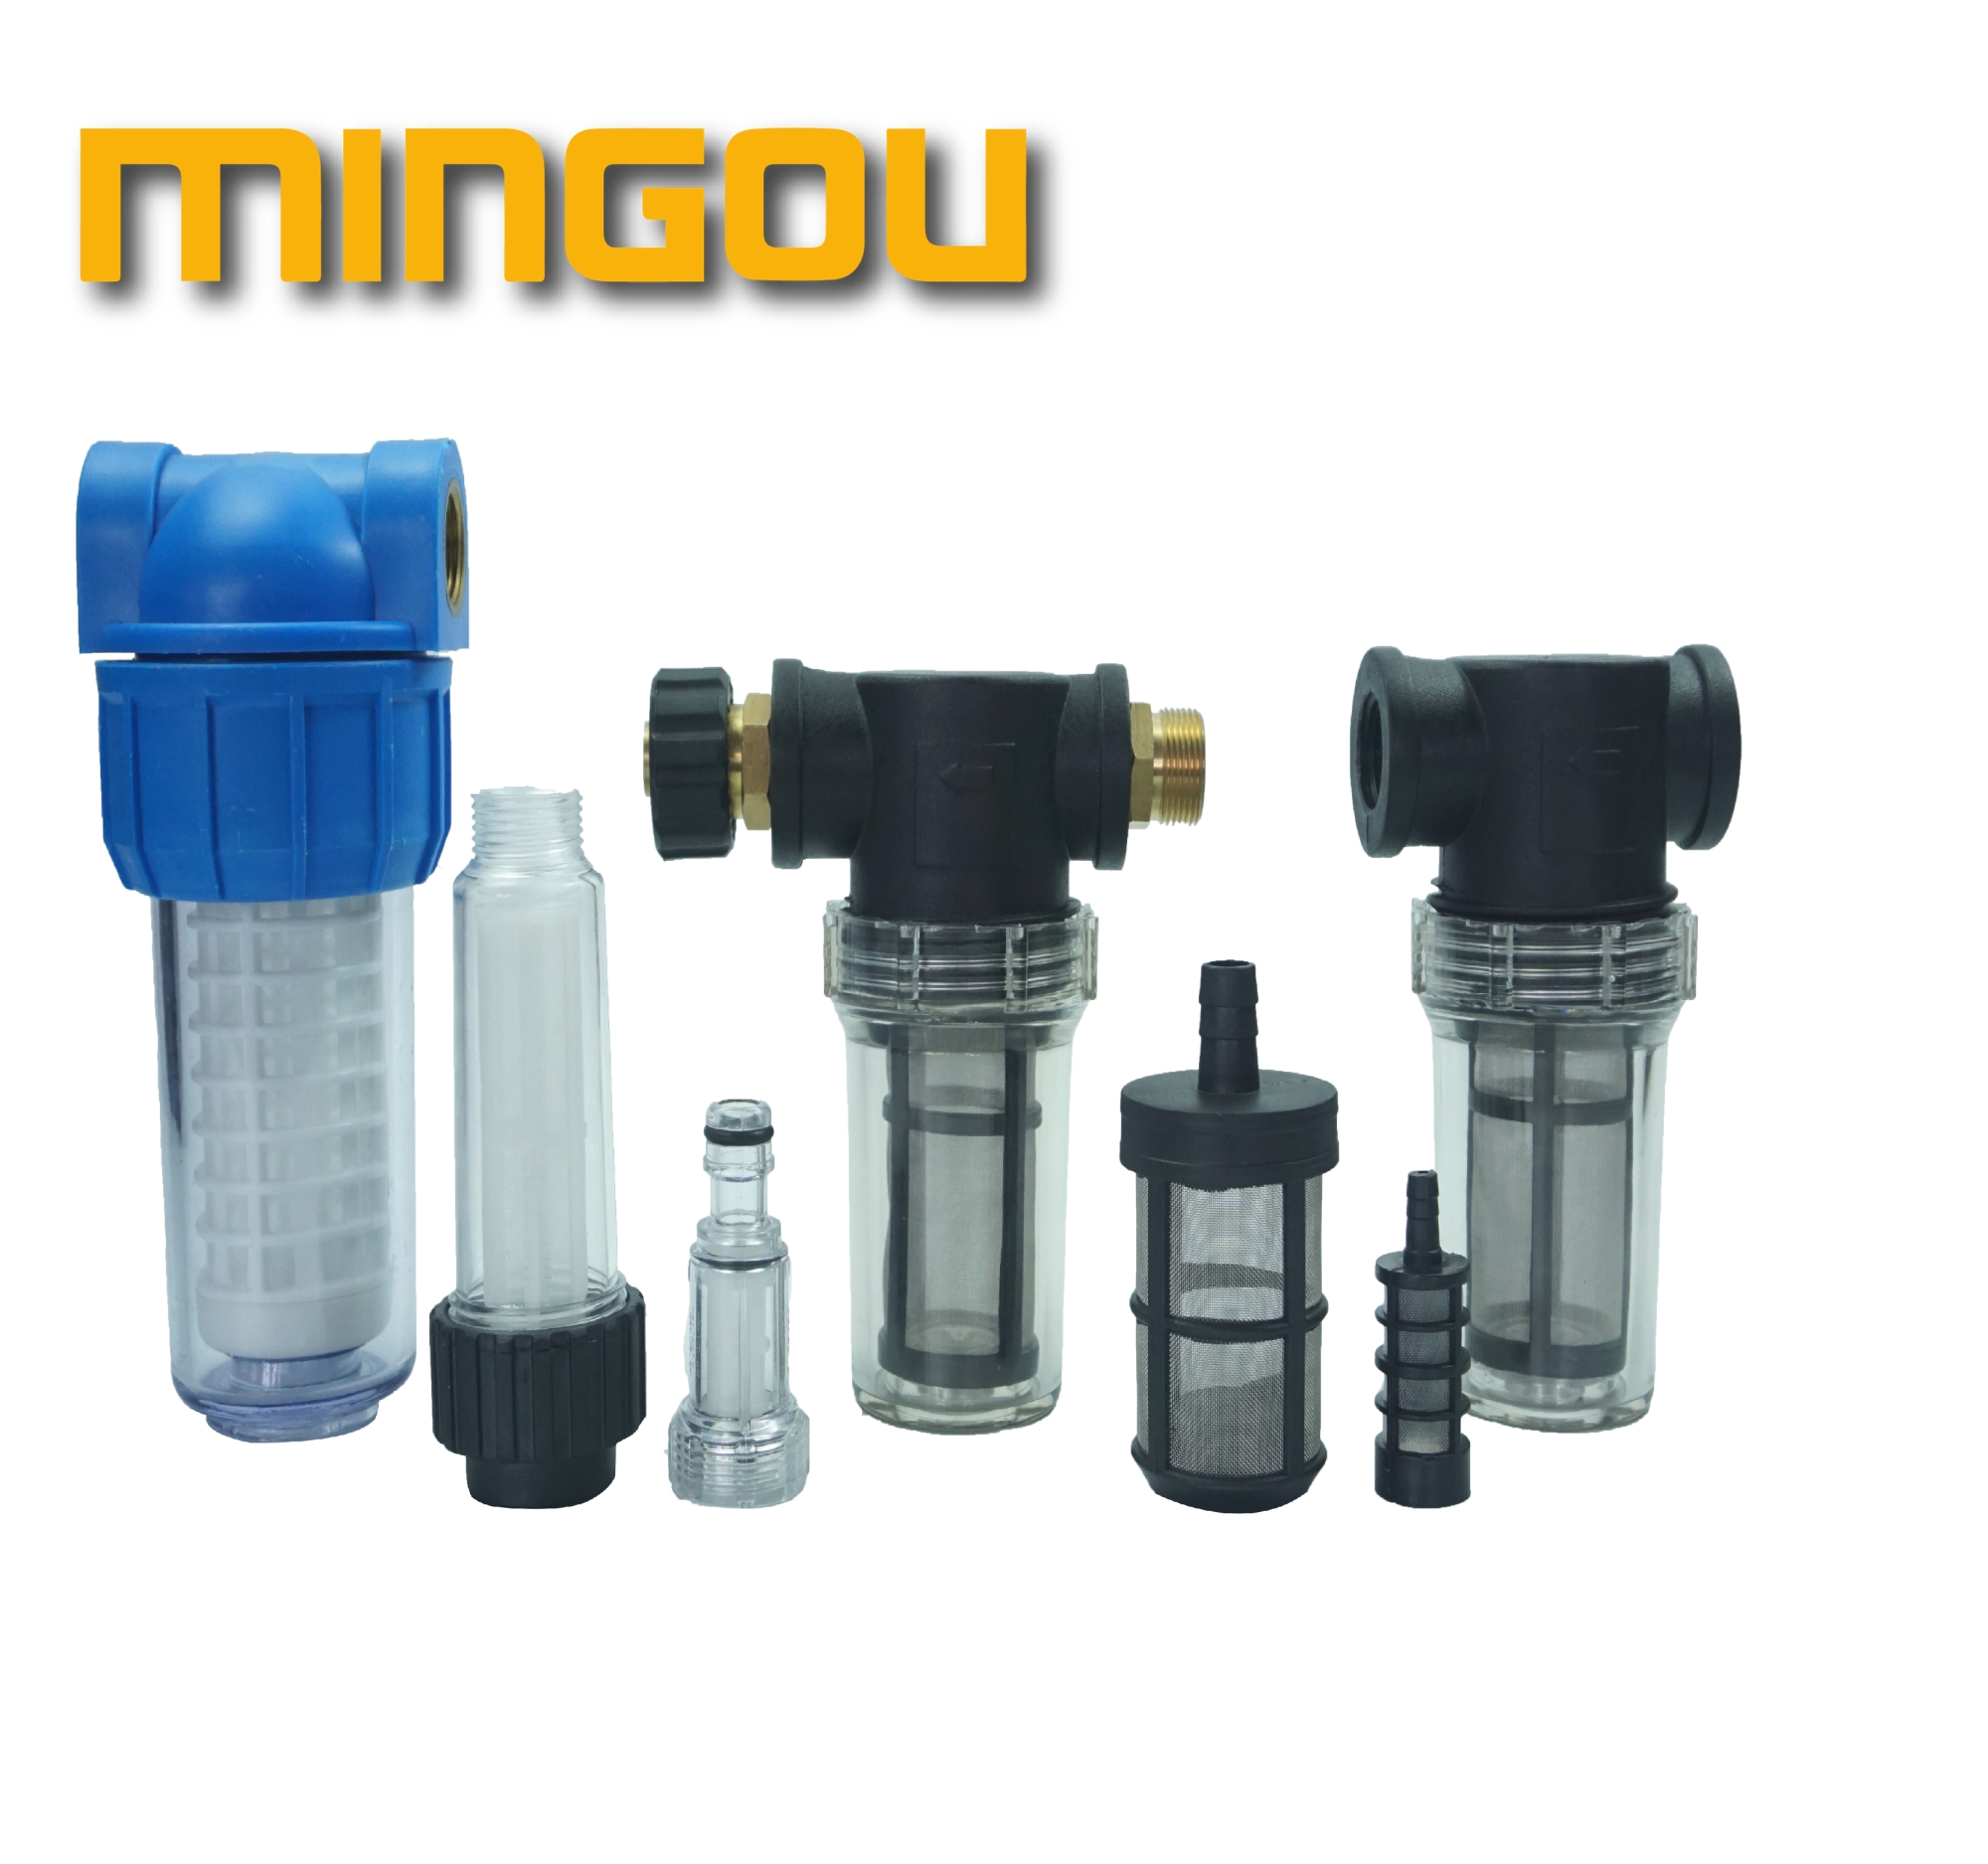 Фильтр впускного водного фильтра G3/4 впускной и выходной стиральный фильтр для воды высокого давления